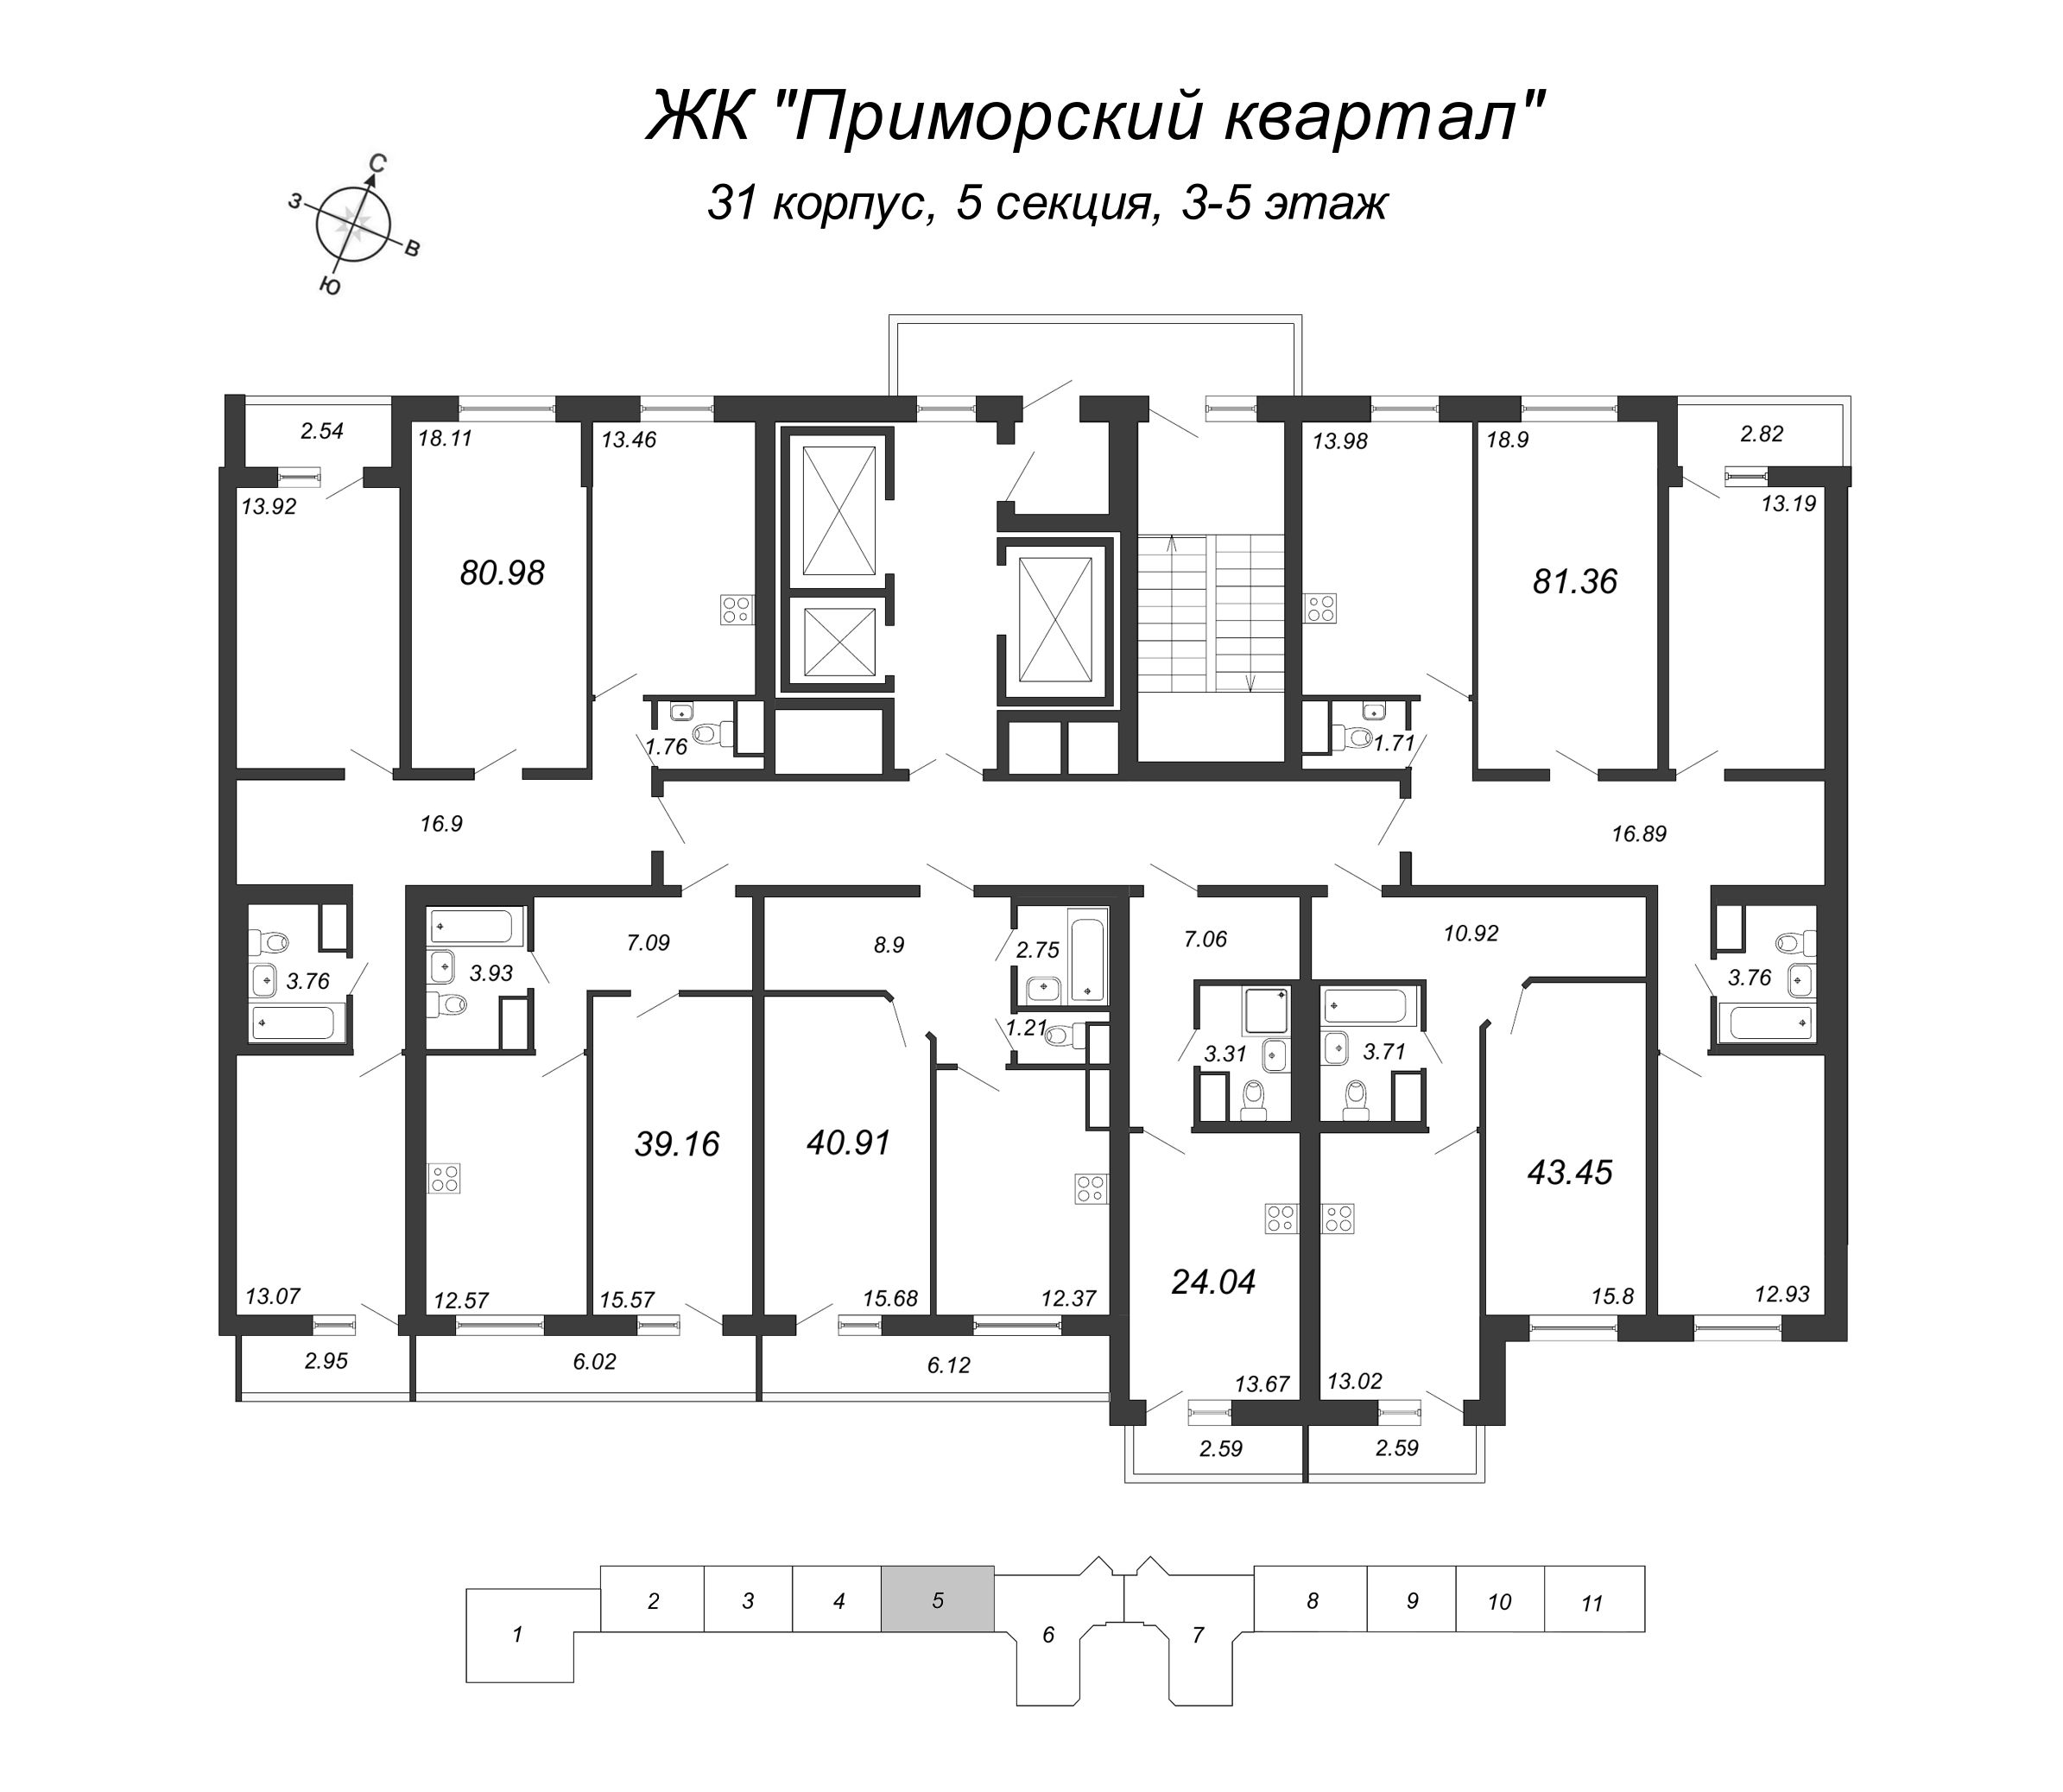 3-комнатная квартира, 80.98 м² в ЖК "Приморский квартал" - планировка этажа